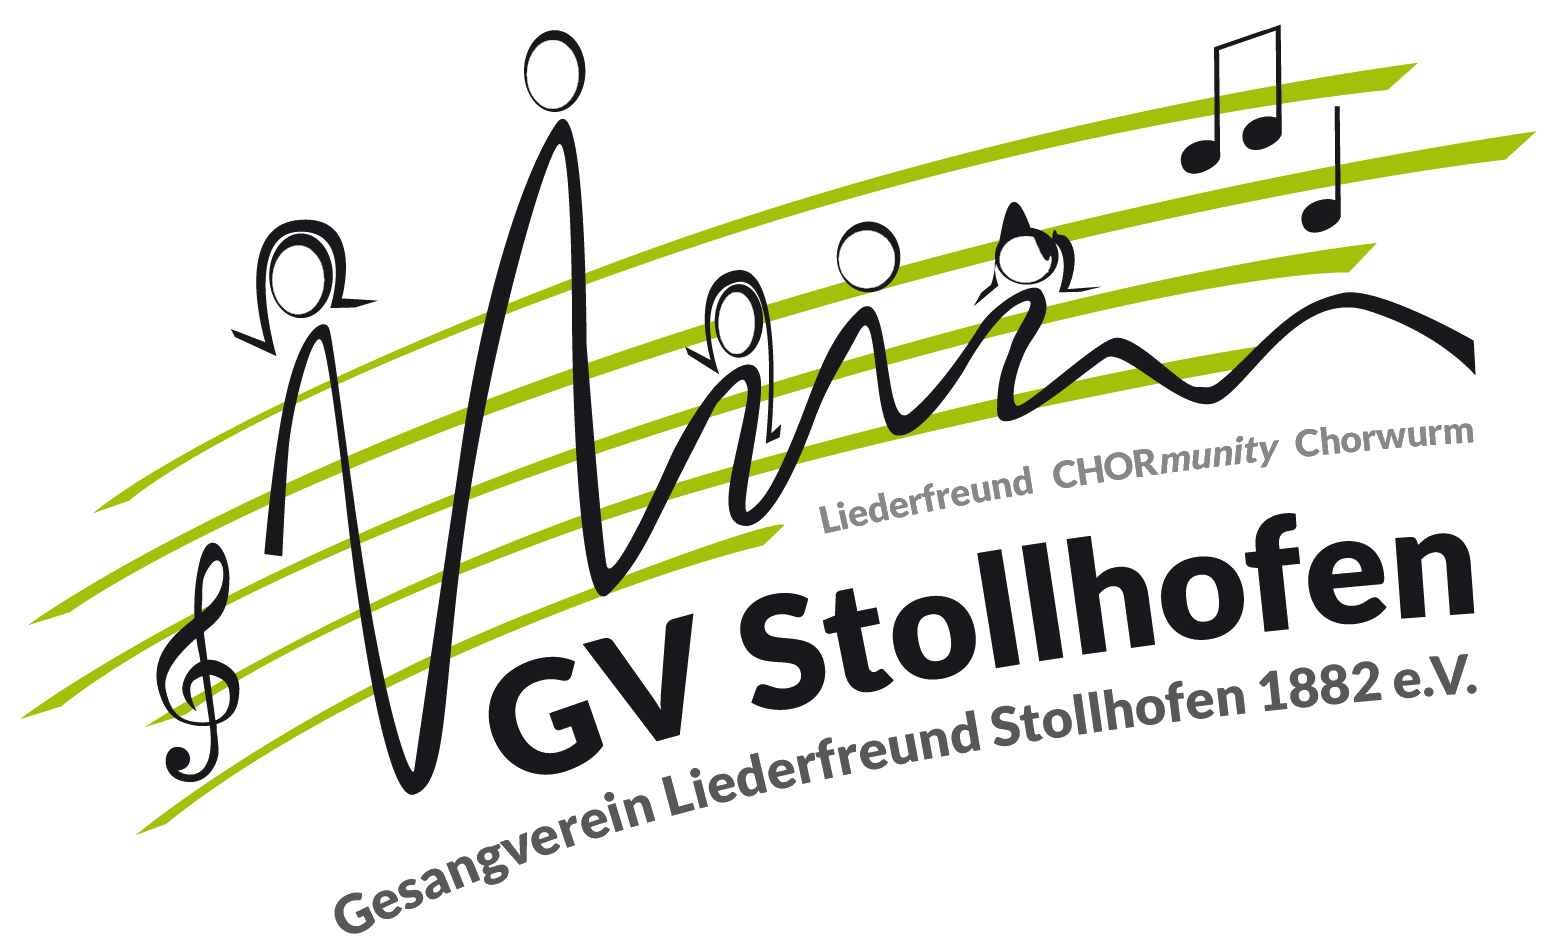 Gesangverein Stollhofen